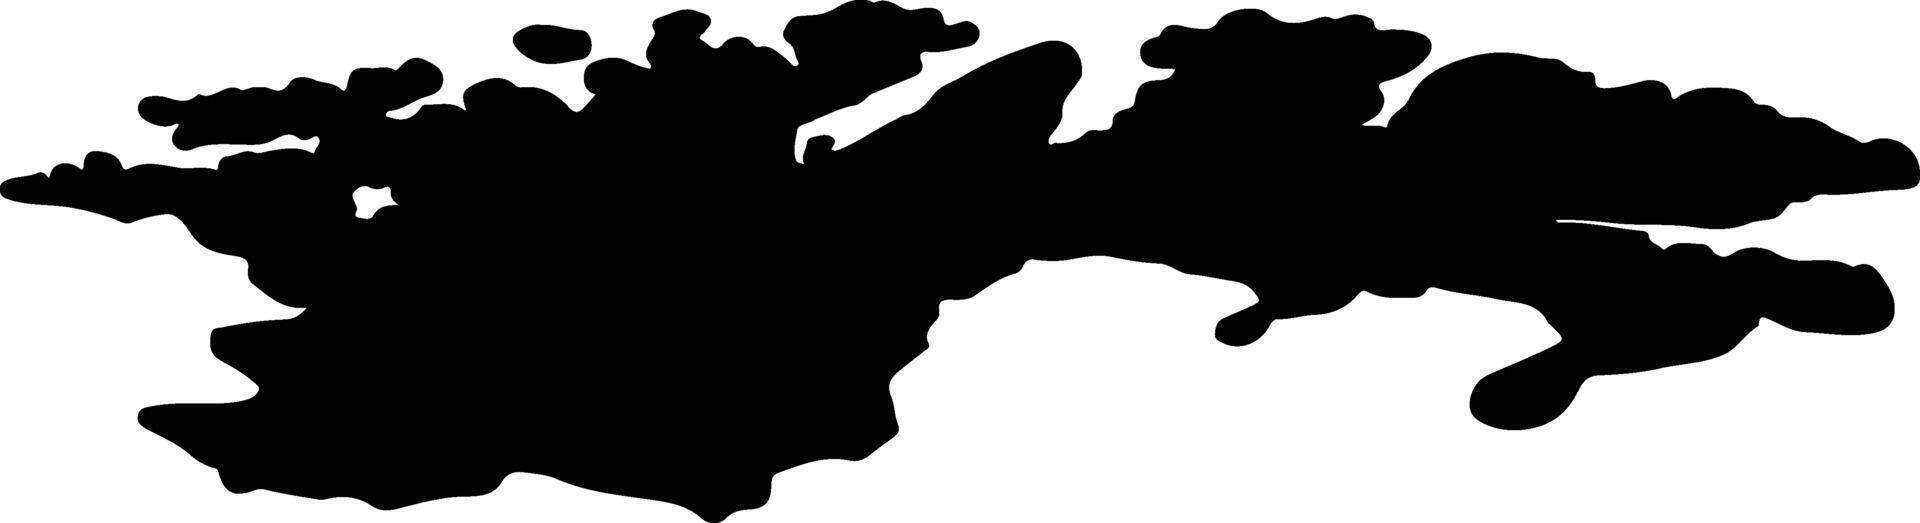 Finnmark Noruega silhueta mapa vetor